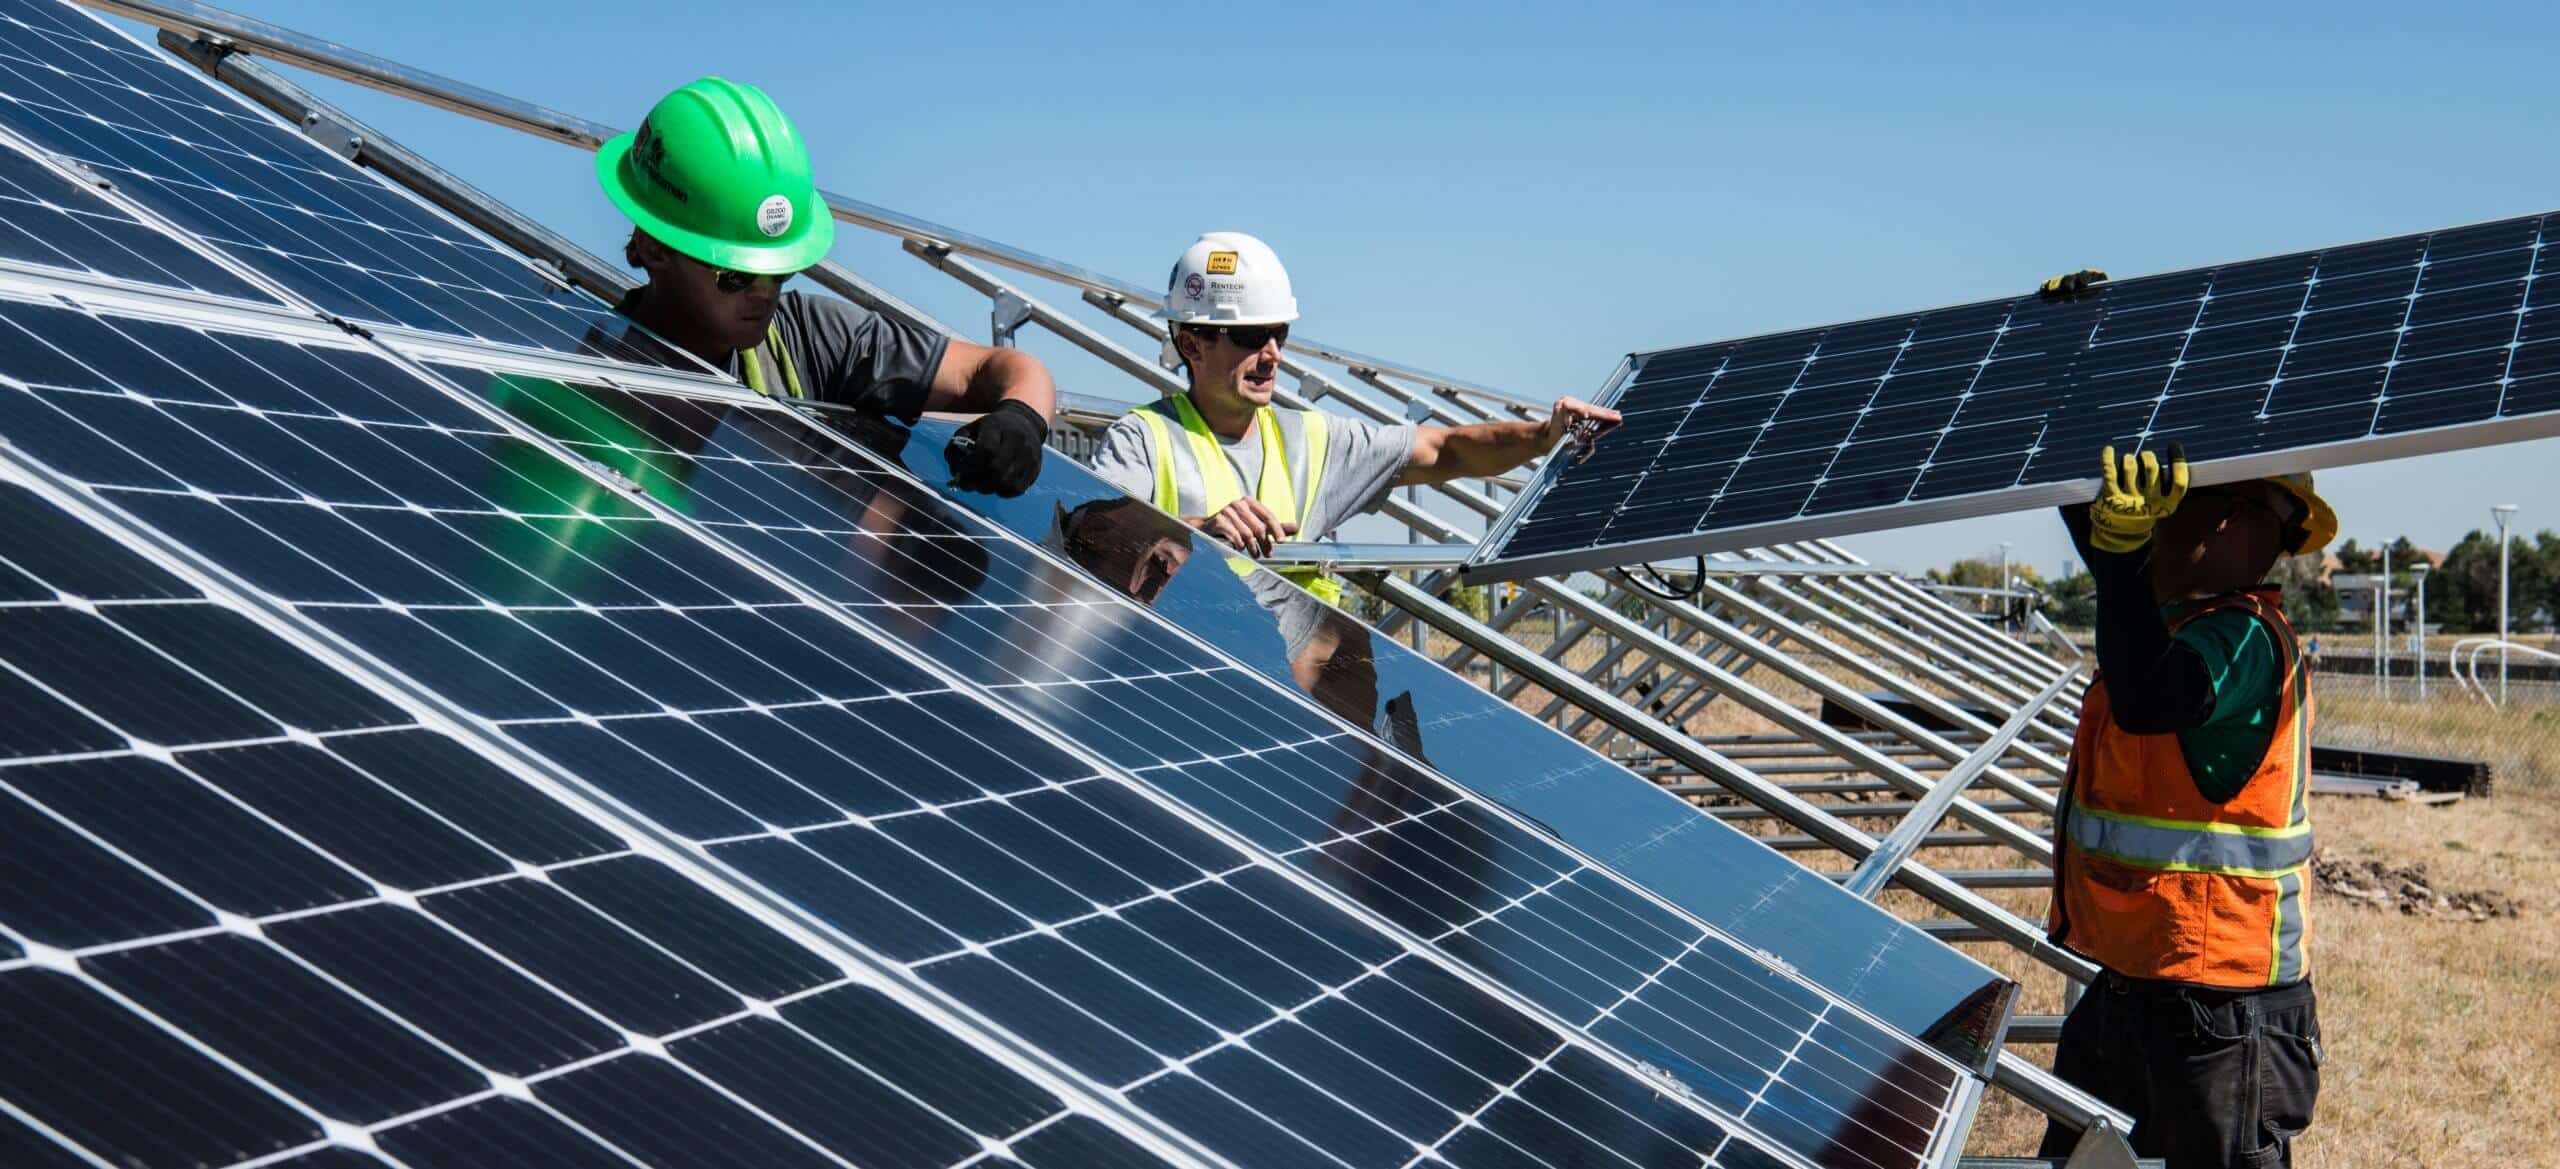 Solar Installation Contractors: Choosing the Best Installer